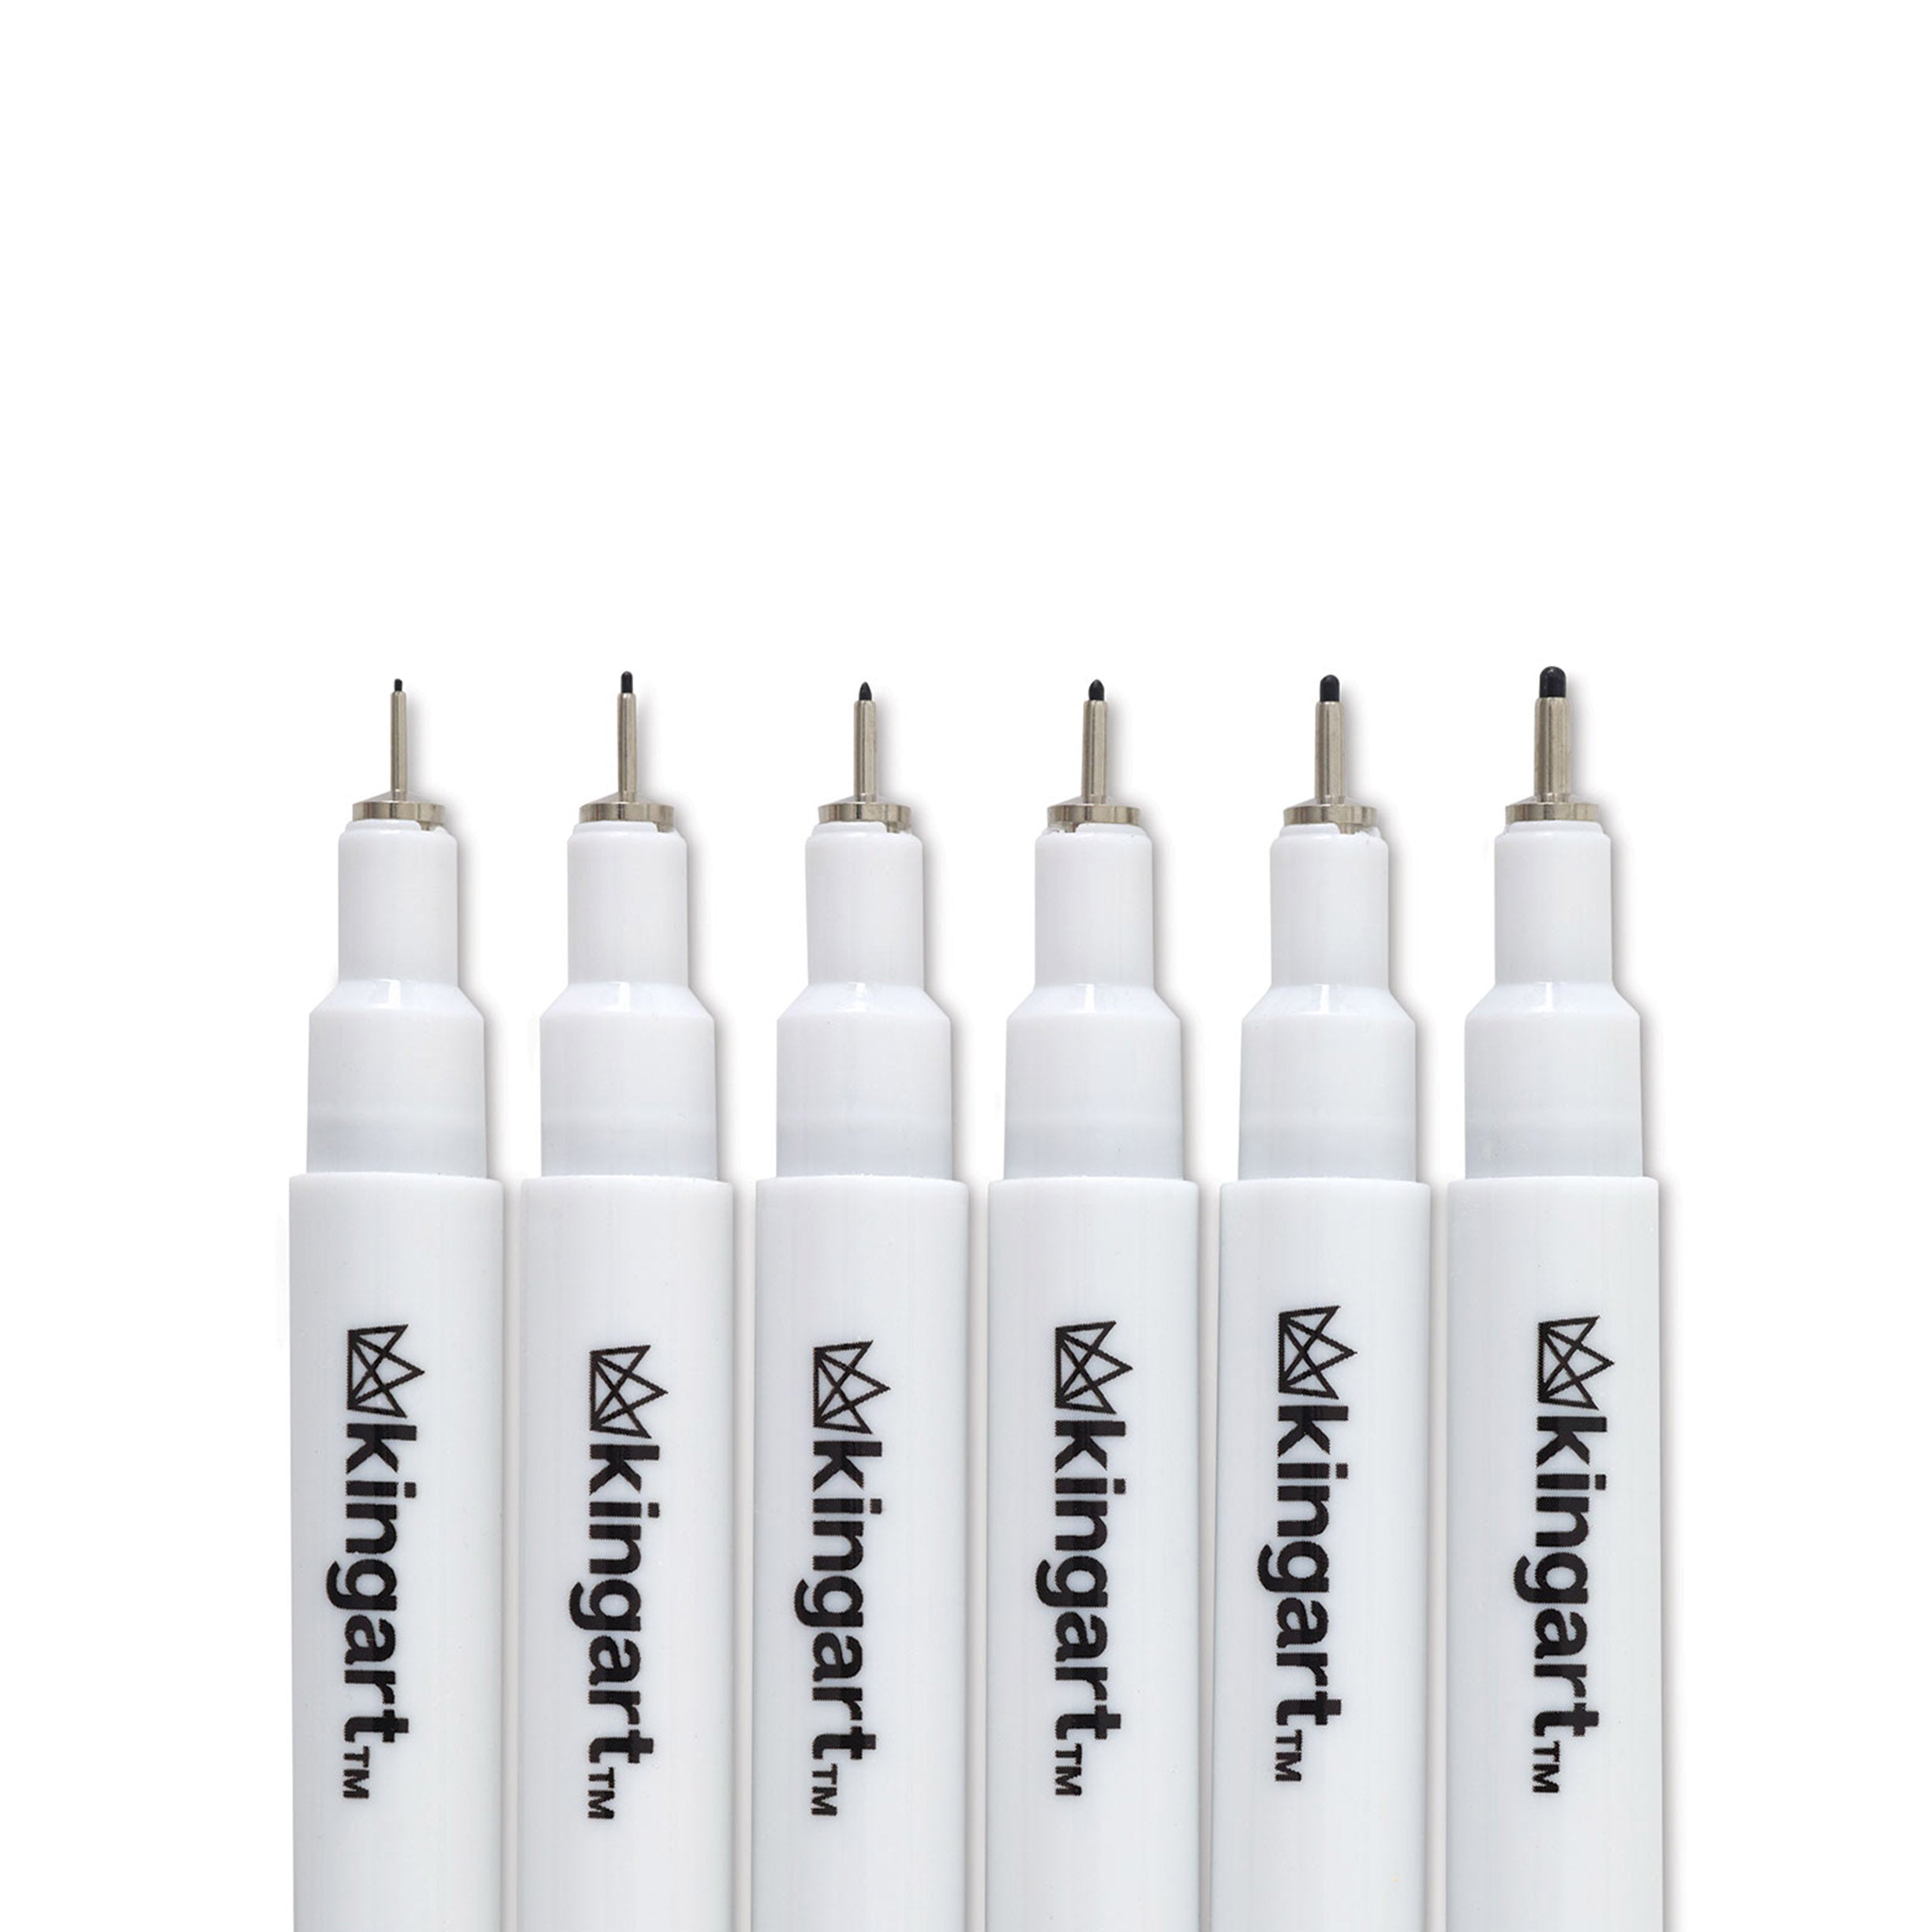 KINGART® Inkline™ Fine Line Ink Pens, Black Set of 6